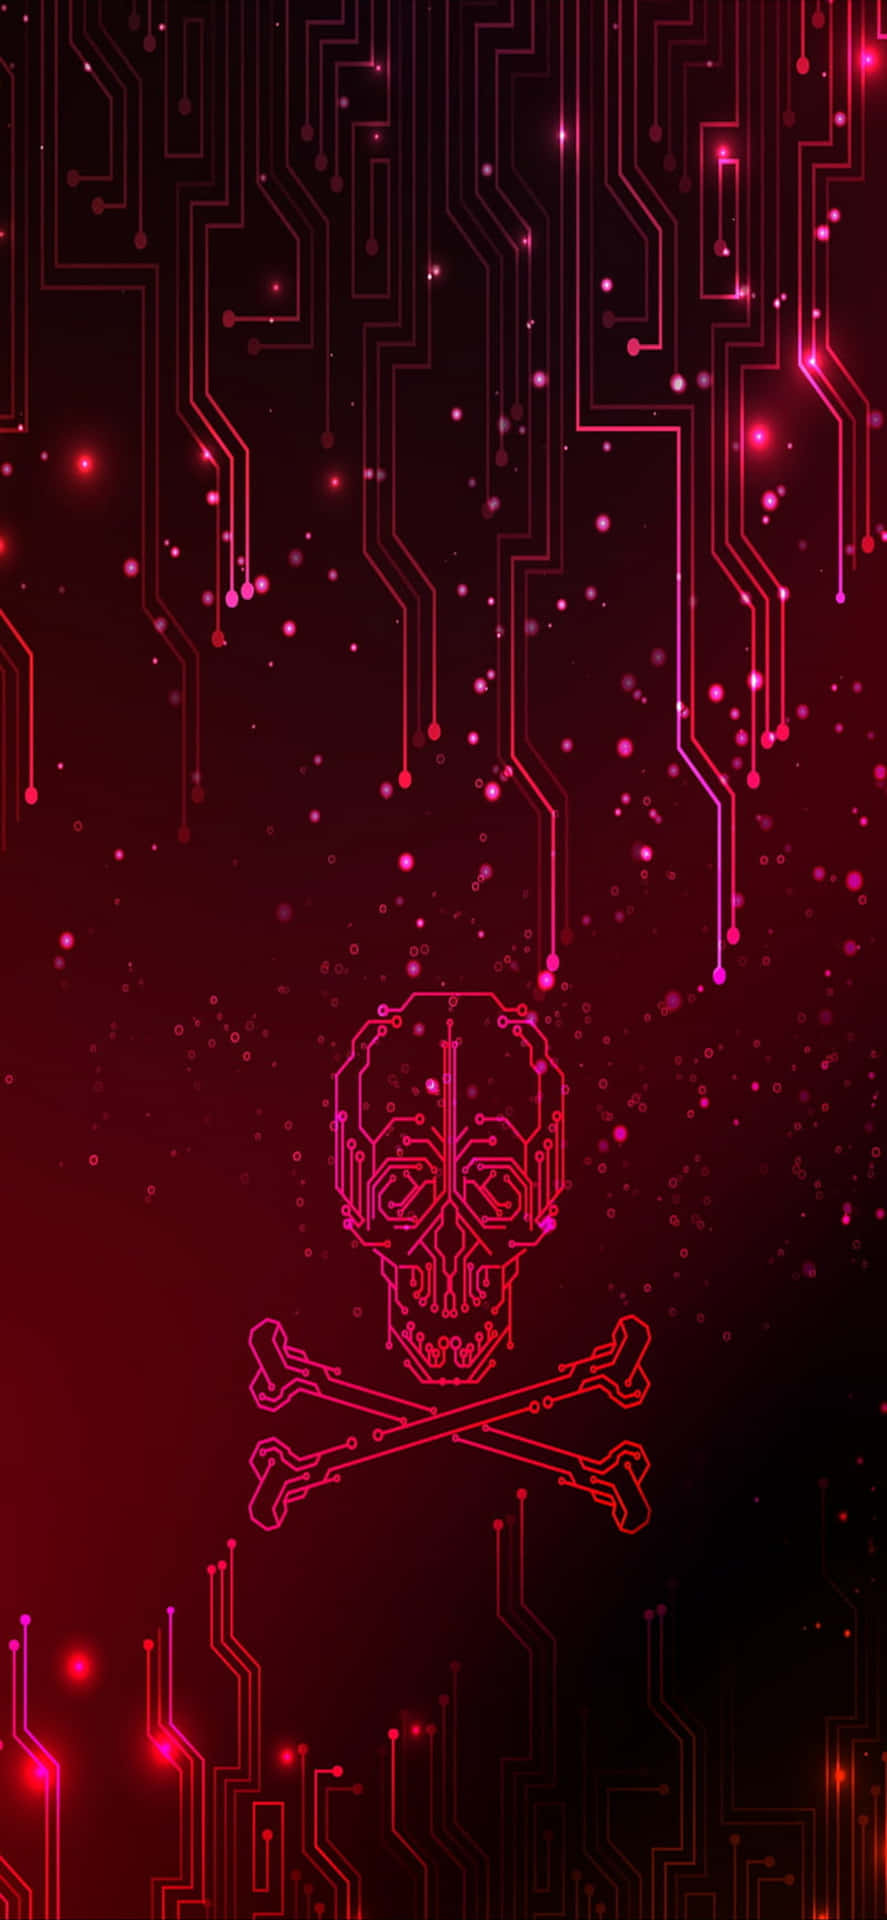 En rød baggrund med et skelet og kors motiv